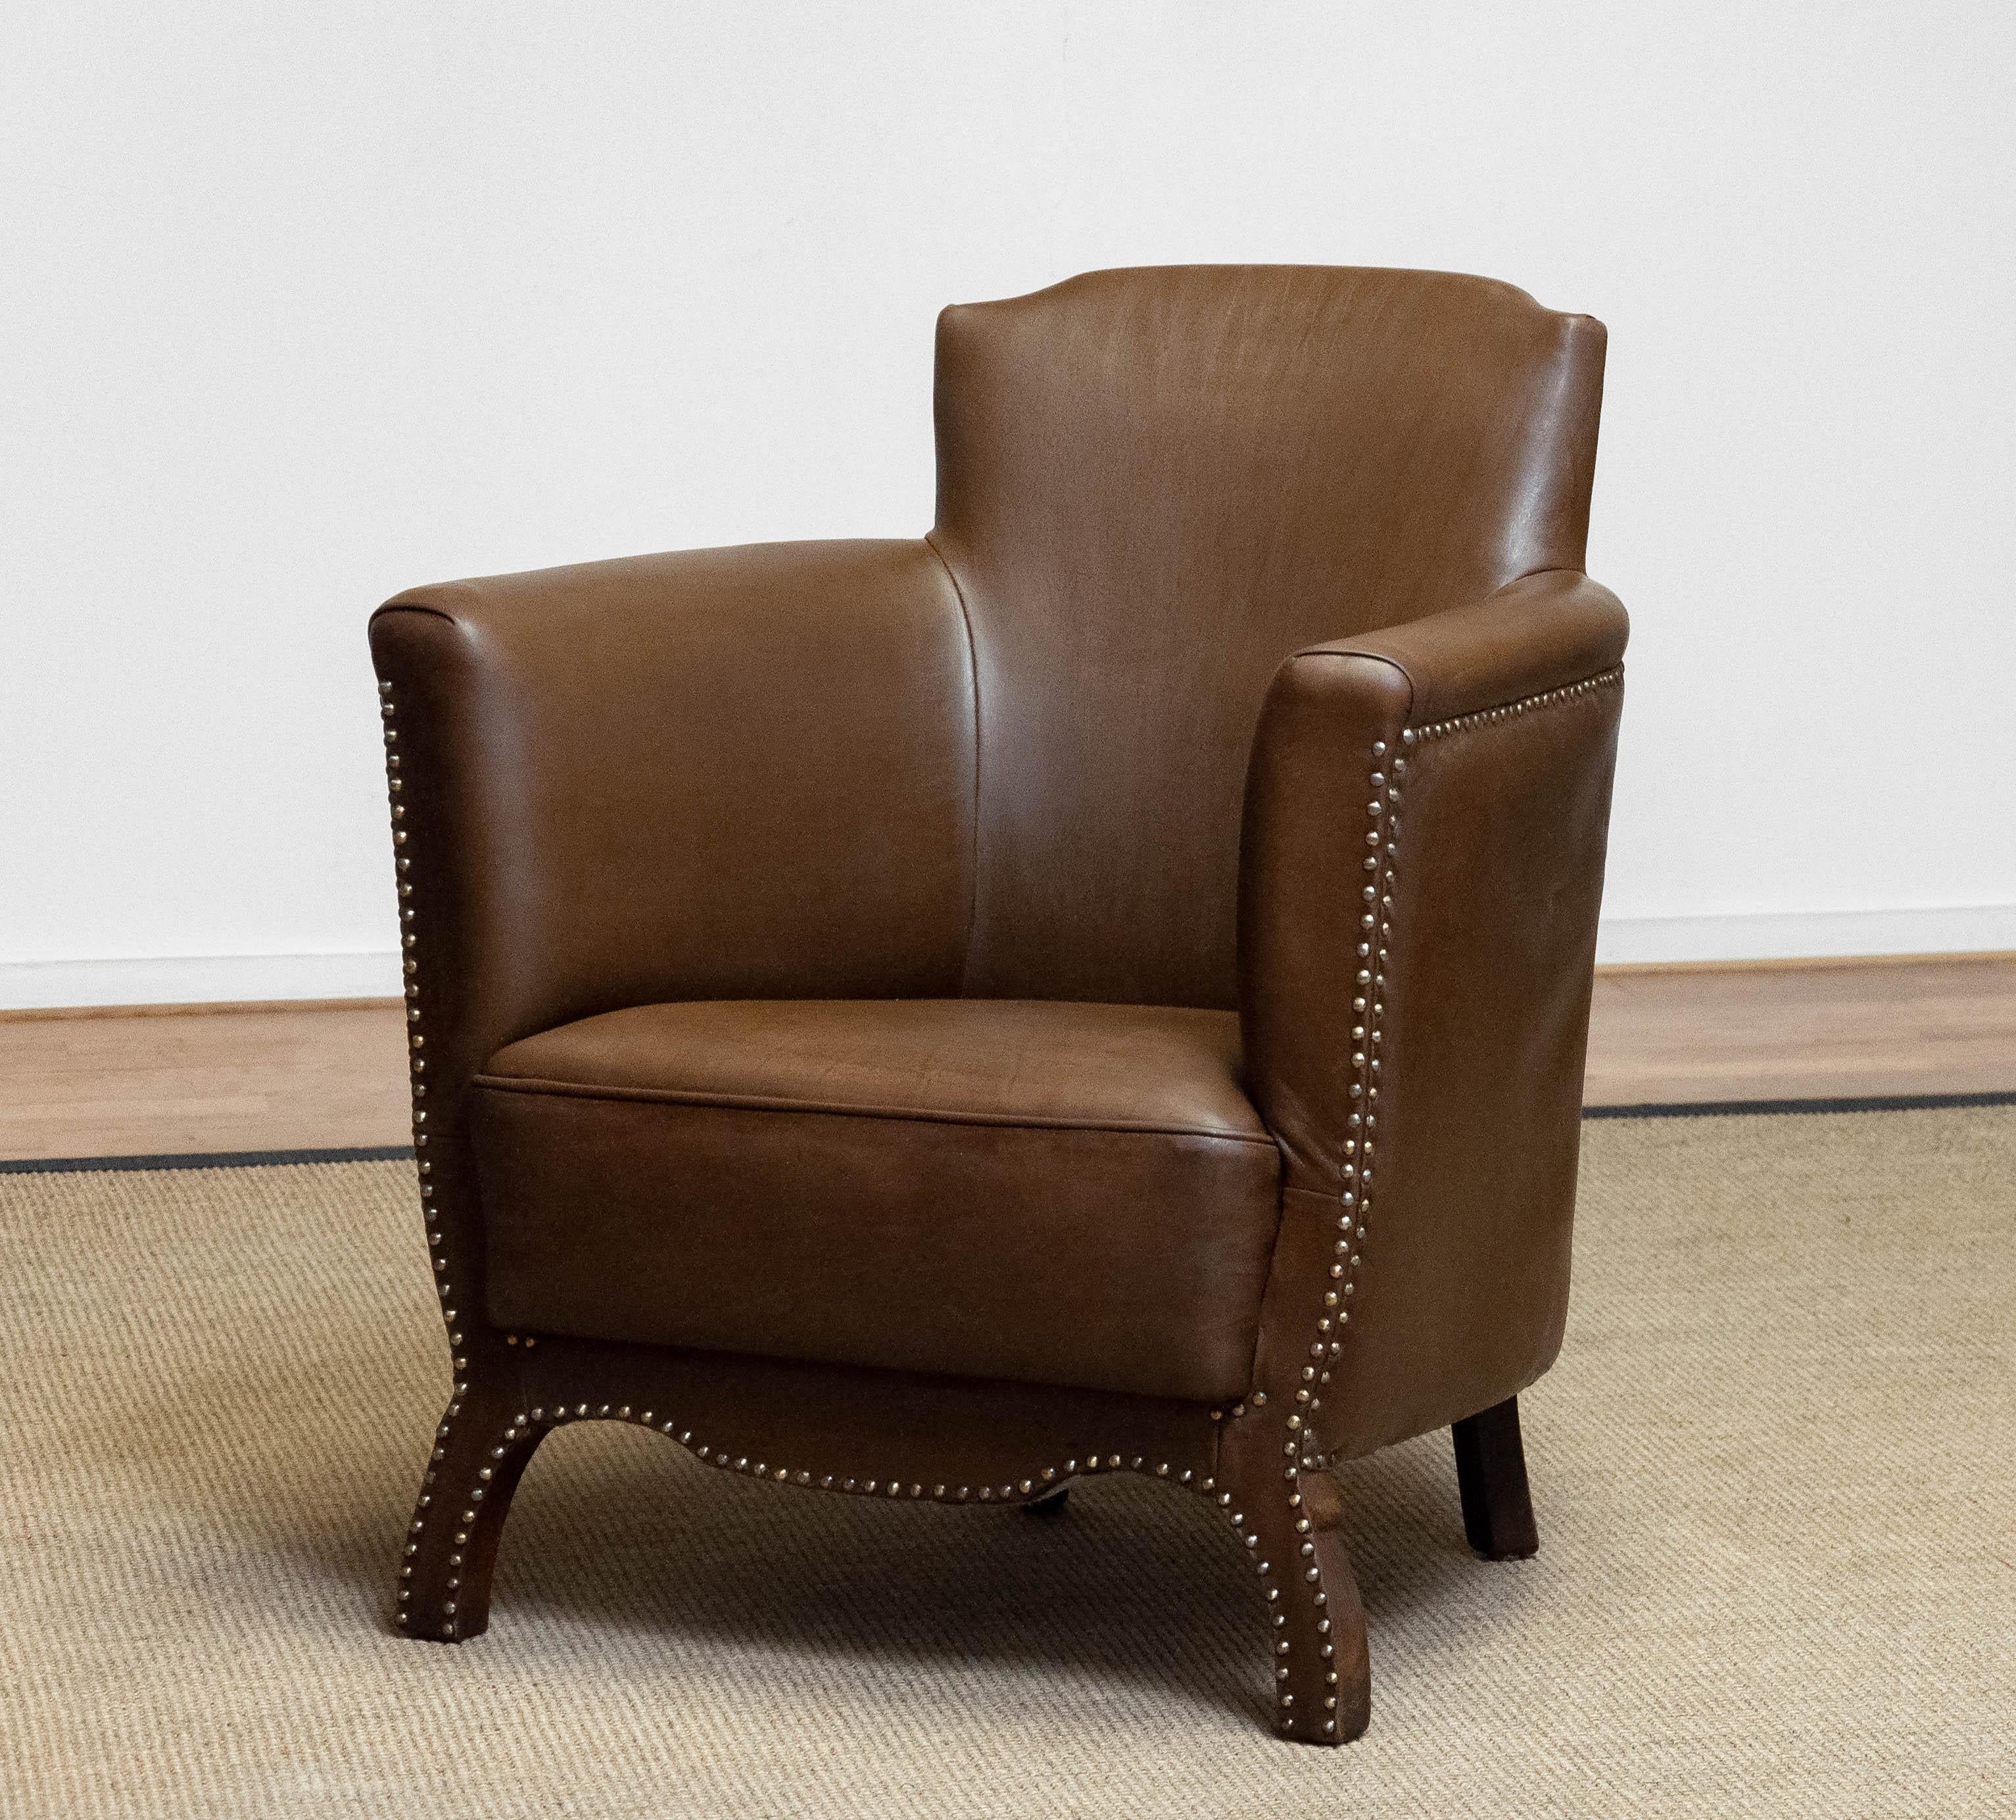 Magnifique chaise longue en cuir clouté marron / tan des années 1930, conçue par Otto Schultz pour Boet Götenburg en Suède. Cette chaise longue a été entièrement restaurée dans les années 1990 et est donc en très bon état. Une assise et un soutien